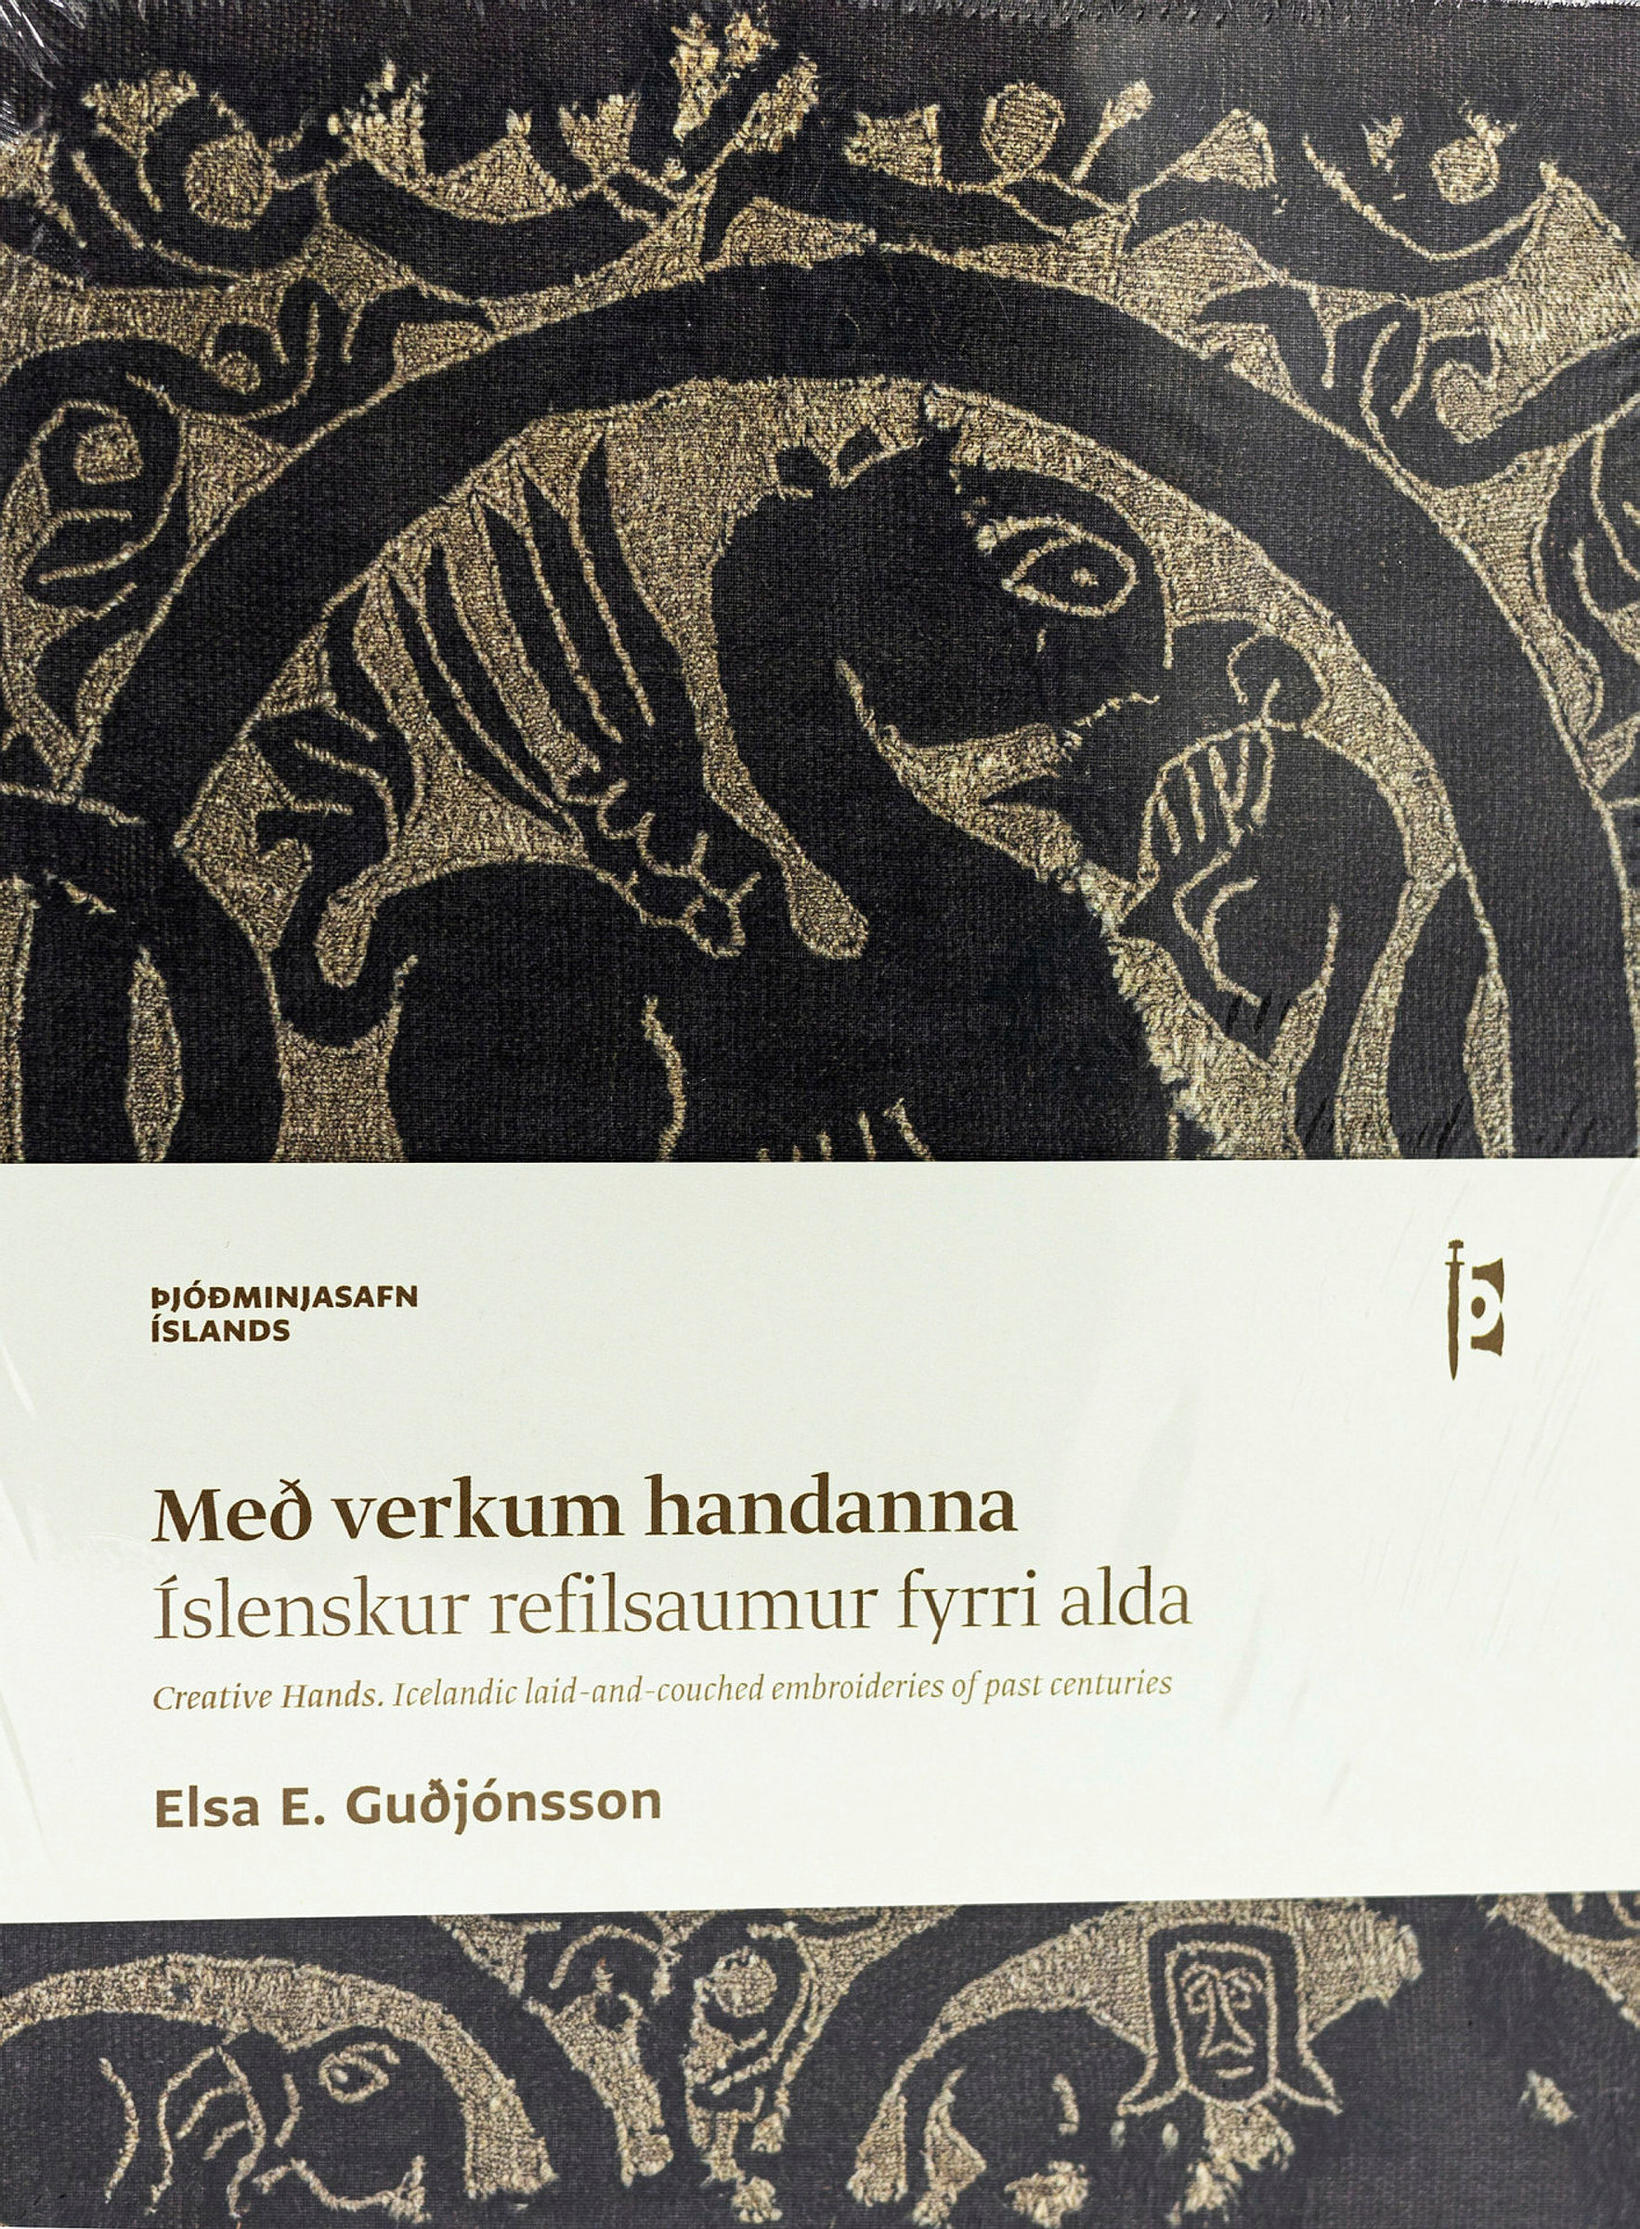 Með verkum handanna eftir Elsu E. Guðjónsson.